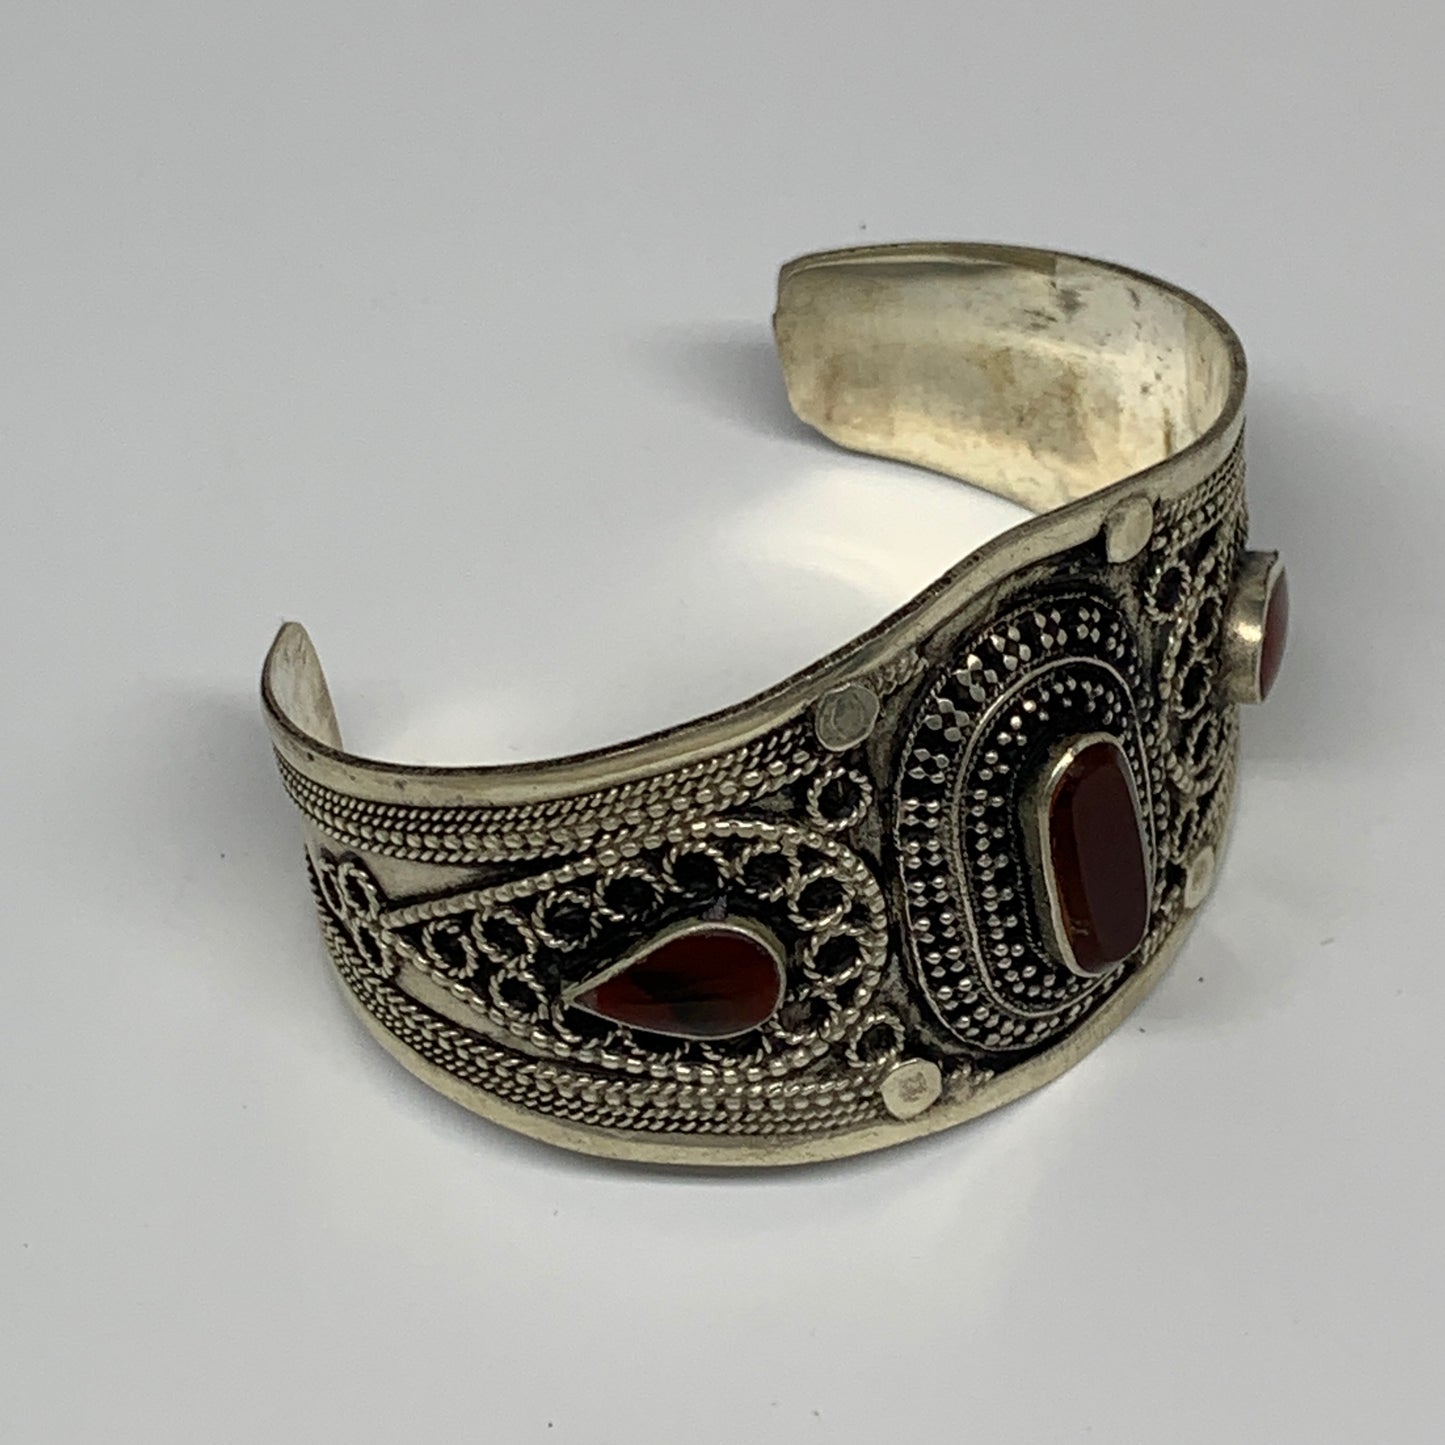 34.7g, 1.6" Red Carnelian Turkmen Cuff Bracelet Tribal Small Oval, B13600